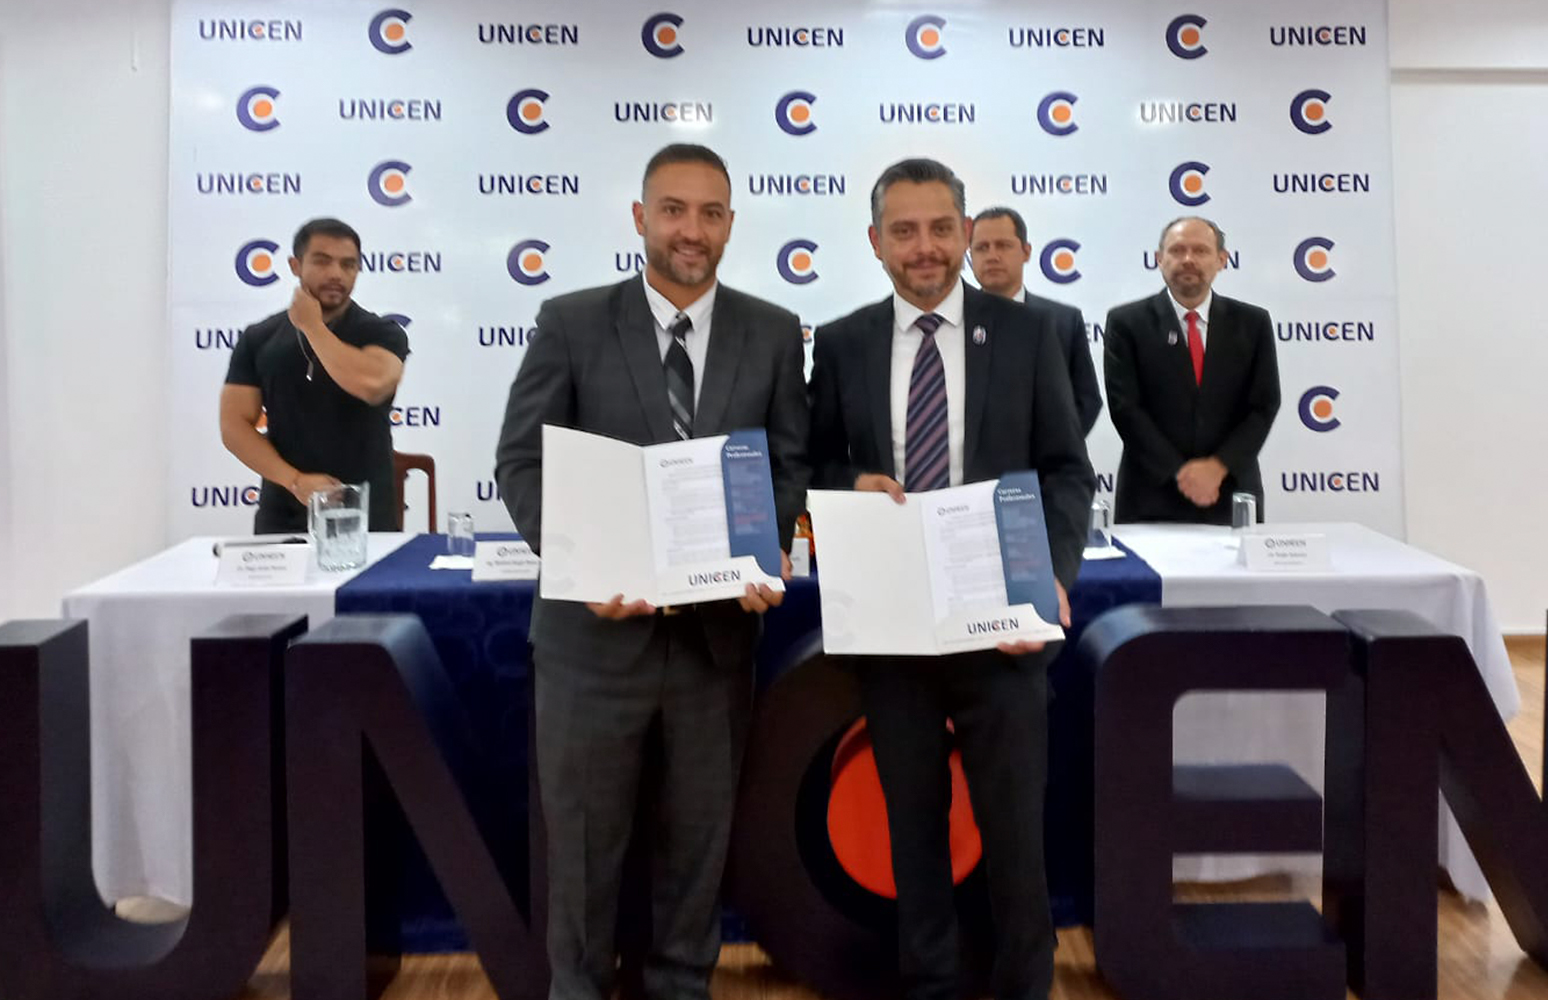 Con el fin de fortalecer la política de empleabilidad, UNICEN firmó un convenio interinstitucional con el GEB